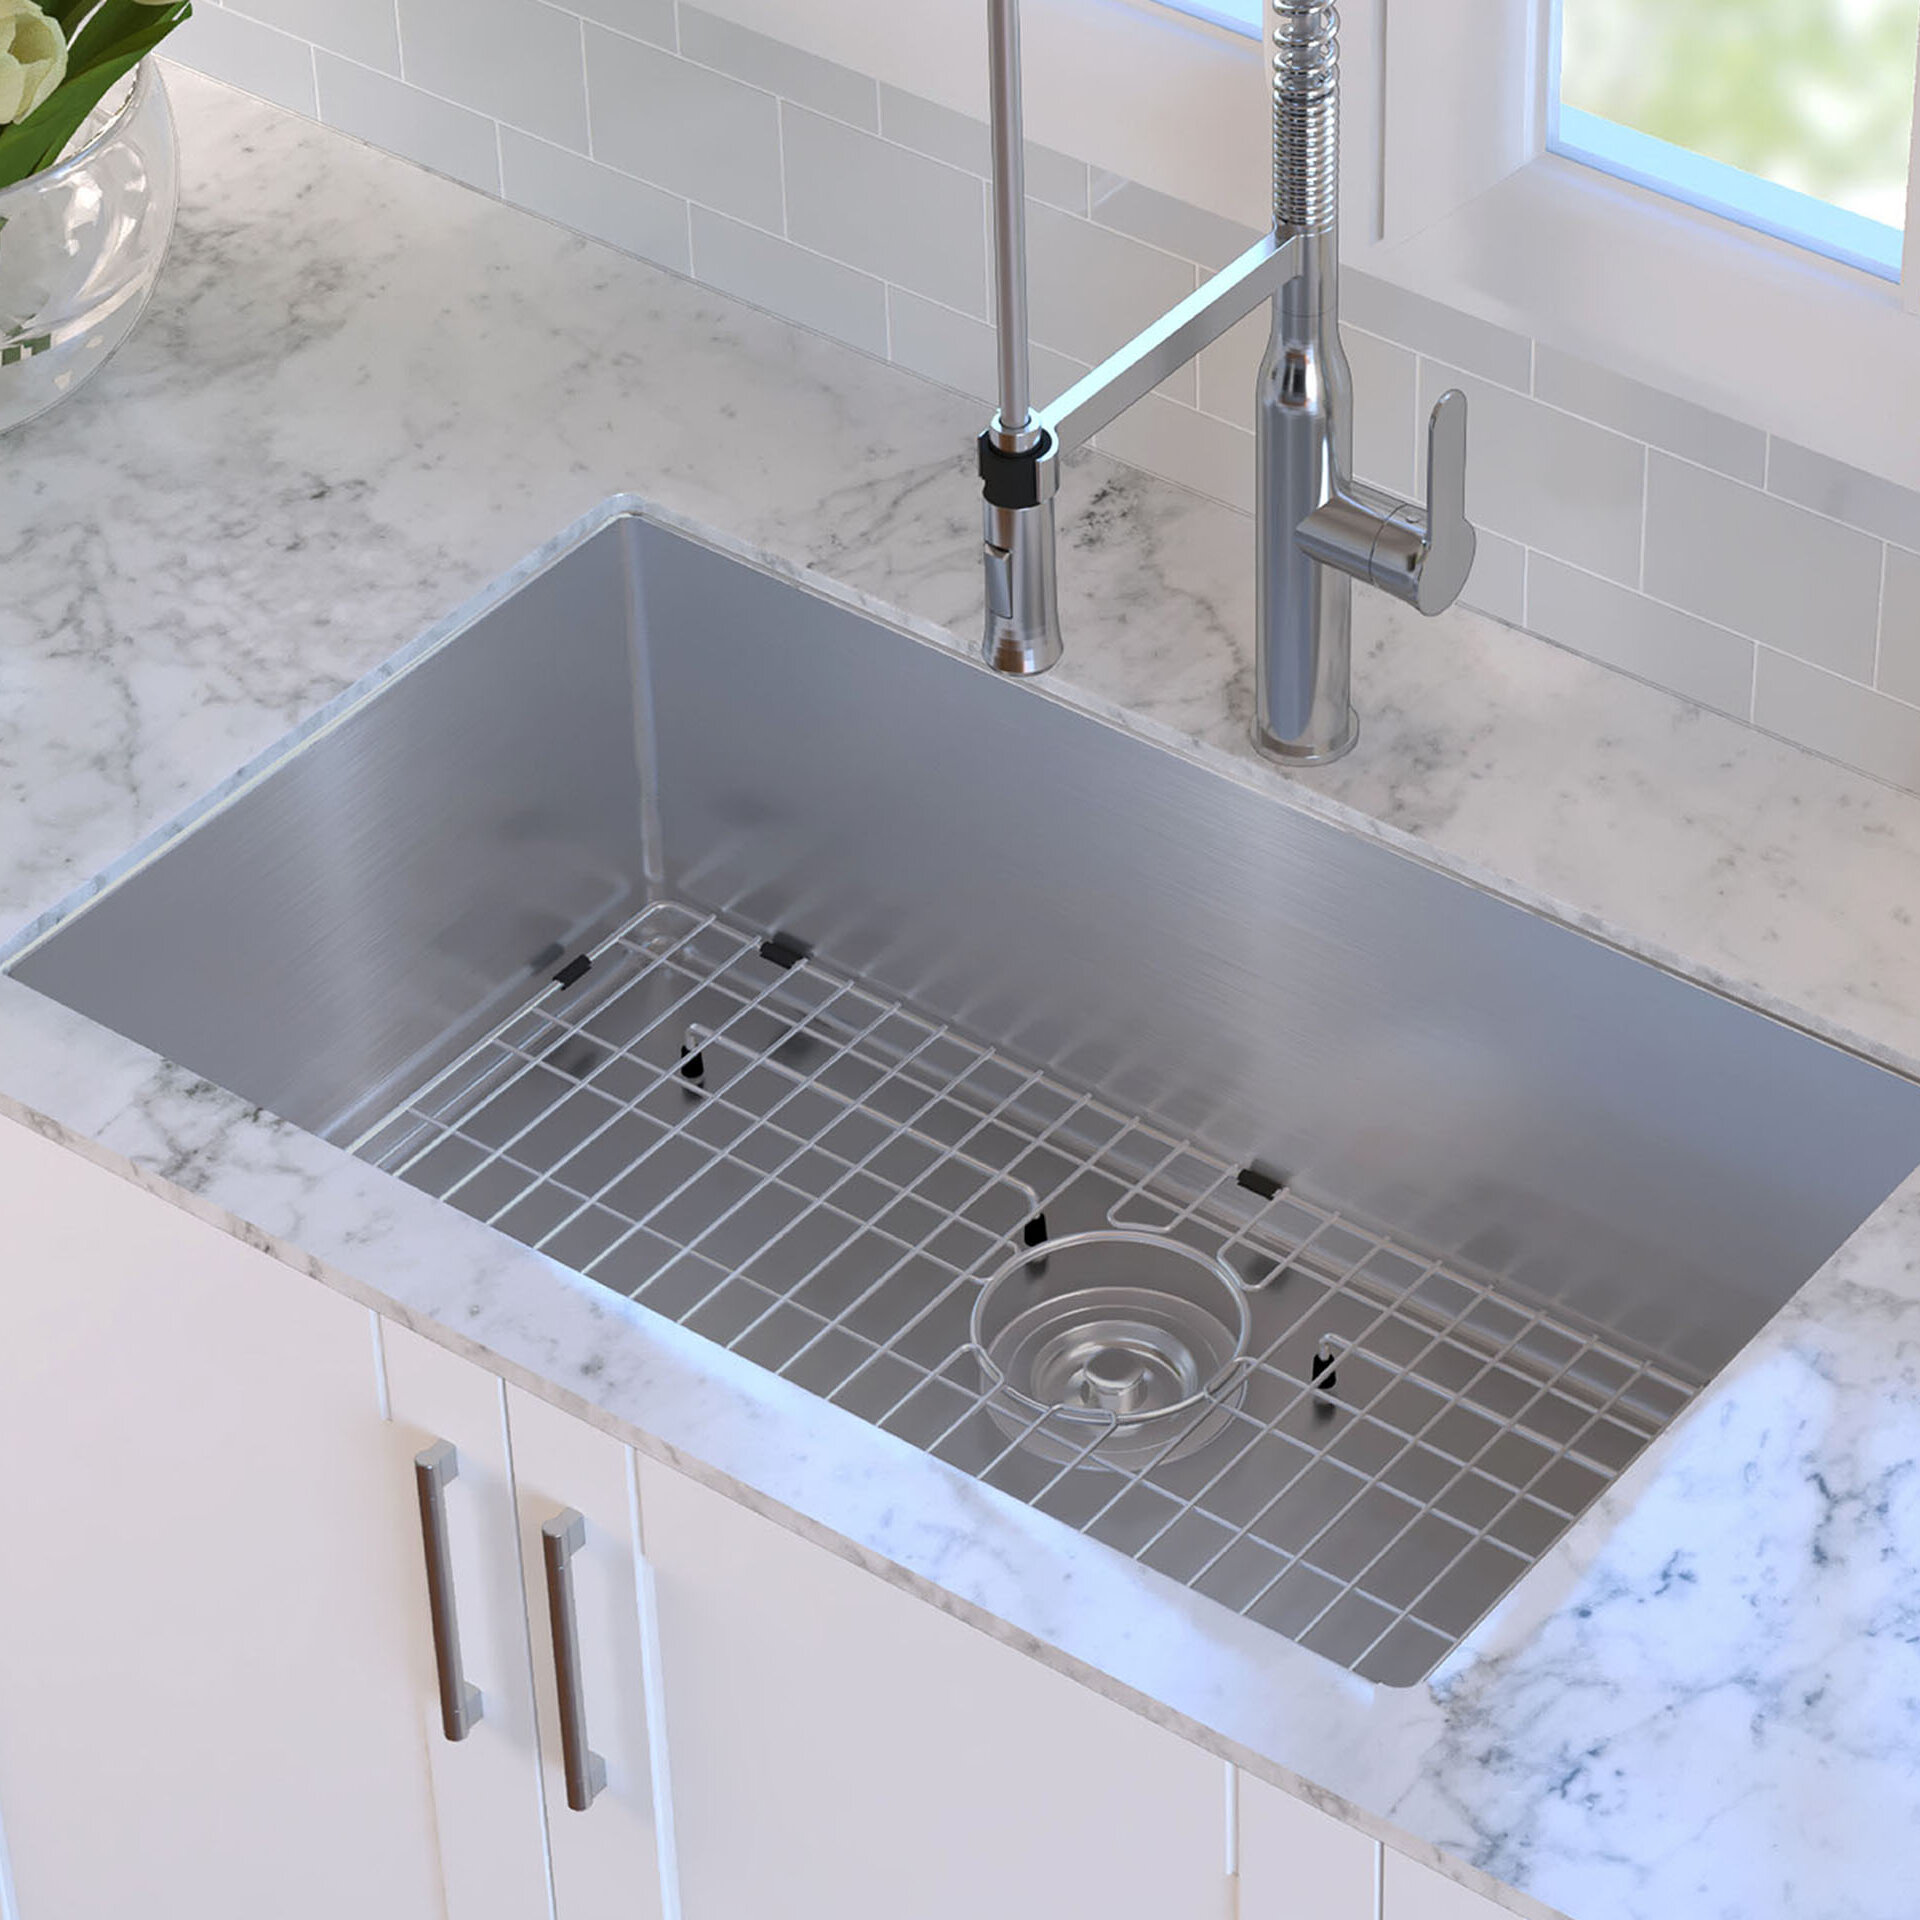 Kraus Standart PRO 32-inch 16 Gauge Undermount Single Bowl Stainless Steel Kitchen Sink KHU100-32